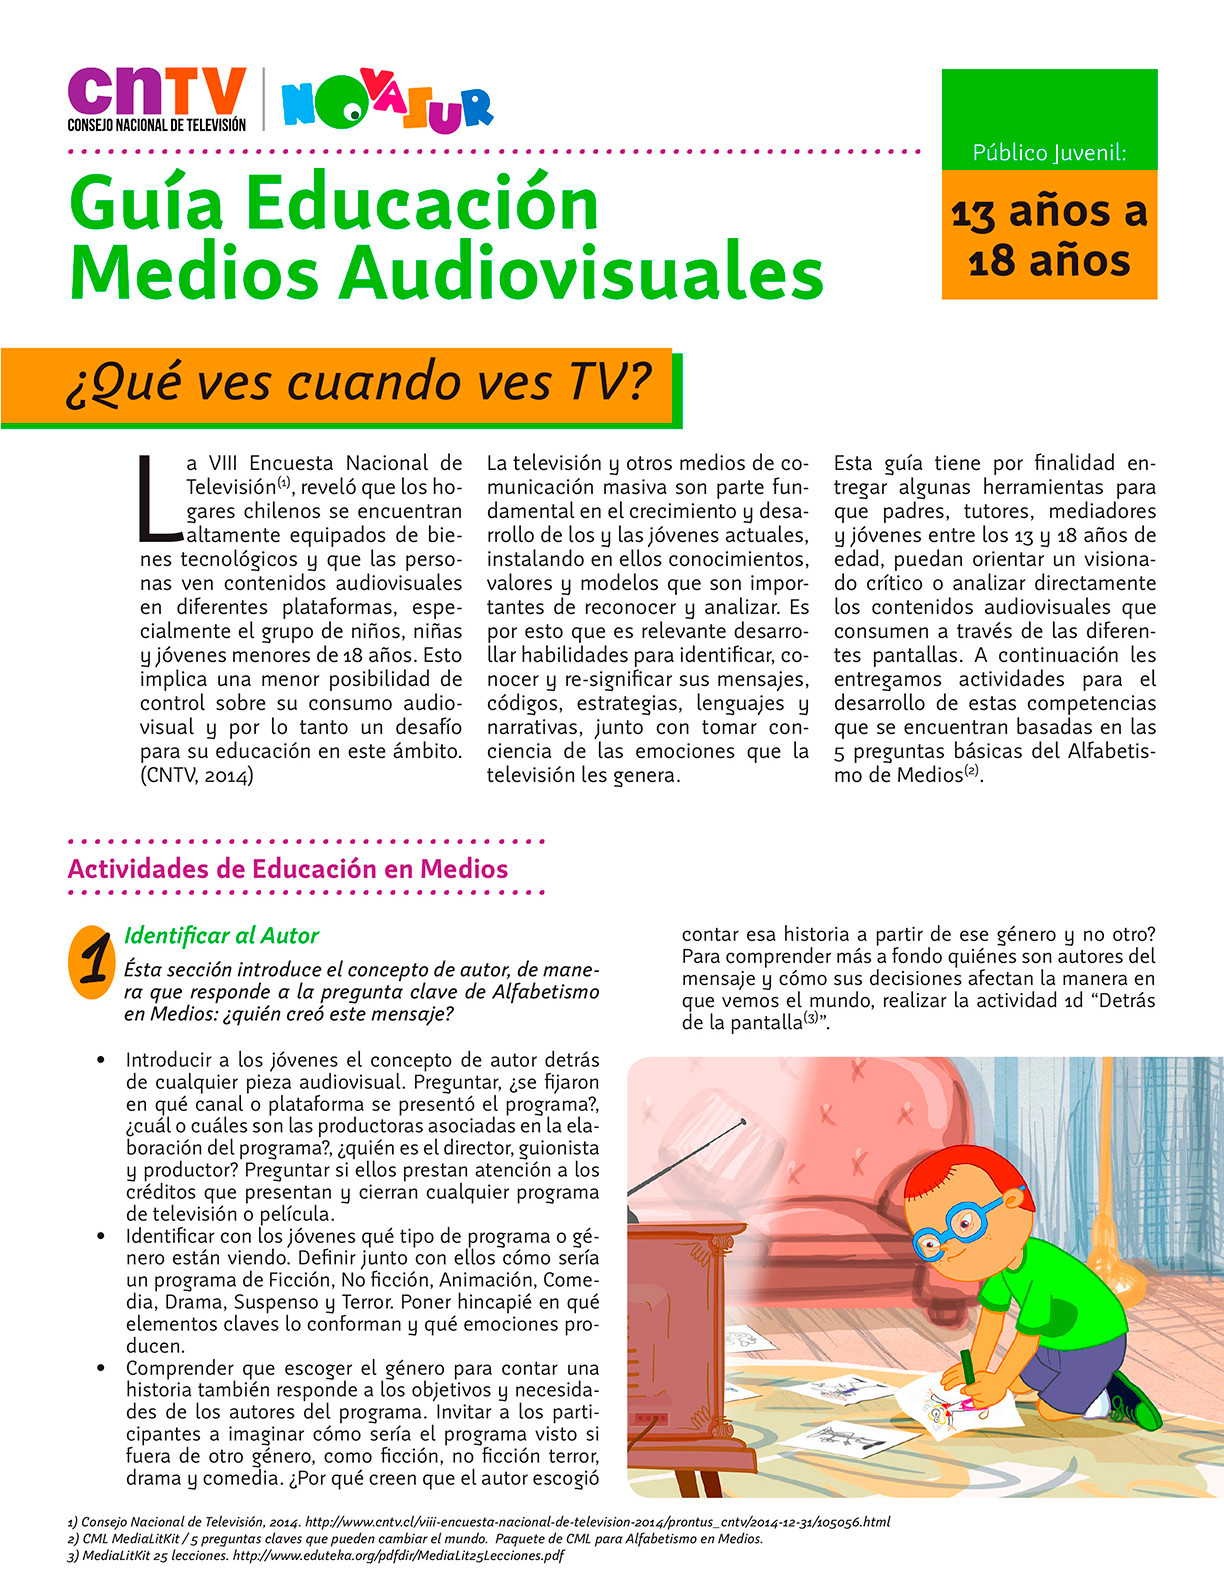 Guía Educación en Medios Audiovisuales para público juvenil de 13 a 18 años